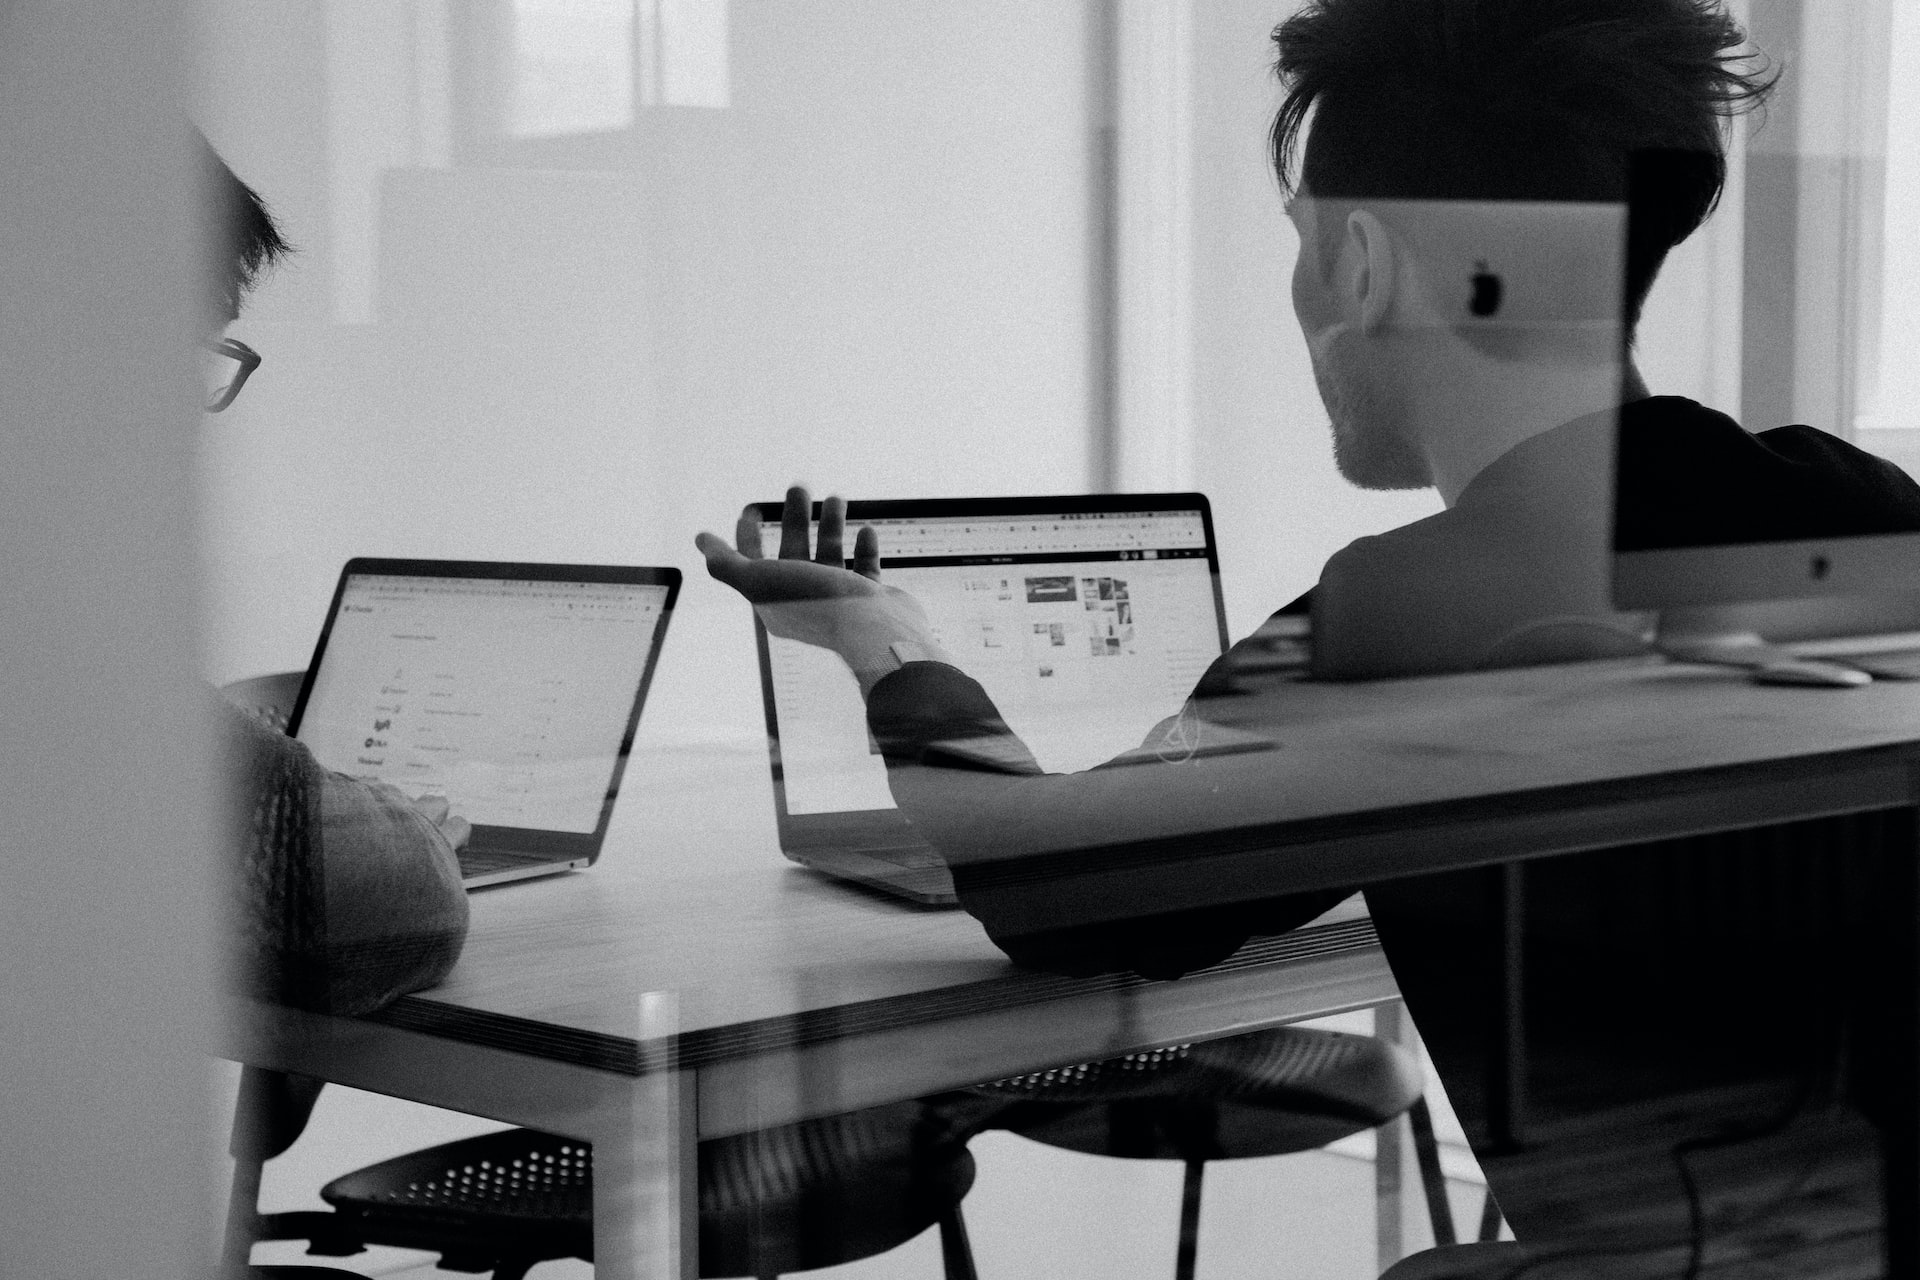 Ein Schwarz-Weiß-Bild von zwei Personen, die an einem Projekt zusammenarbeiten, stellvertretend für Skywize's Team von engagierten und erfahrenen Fachleuten im Bereich DevOps